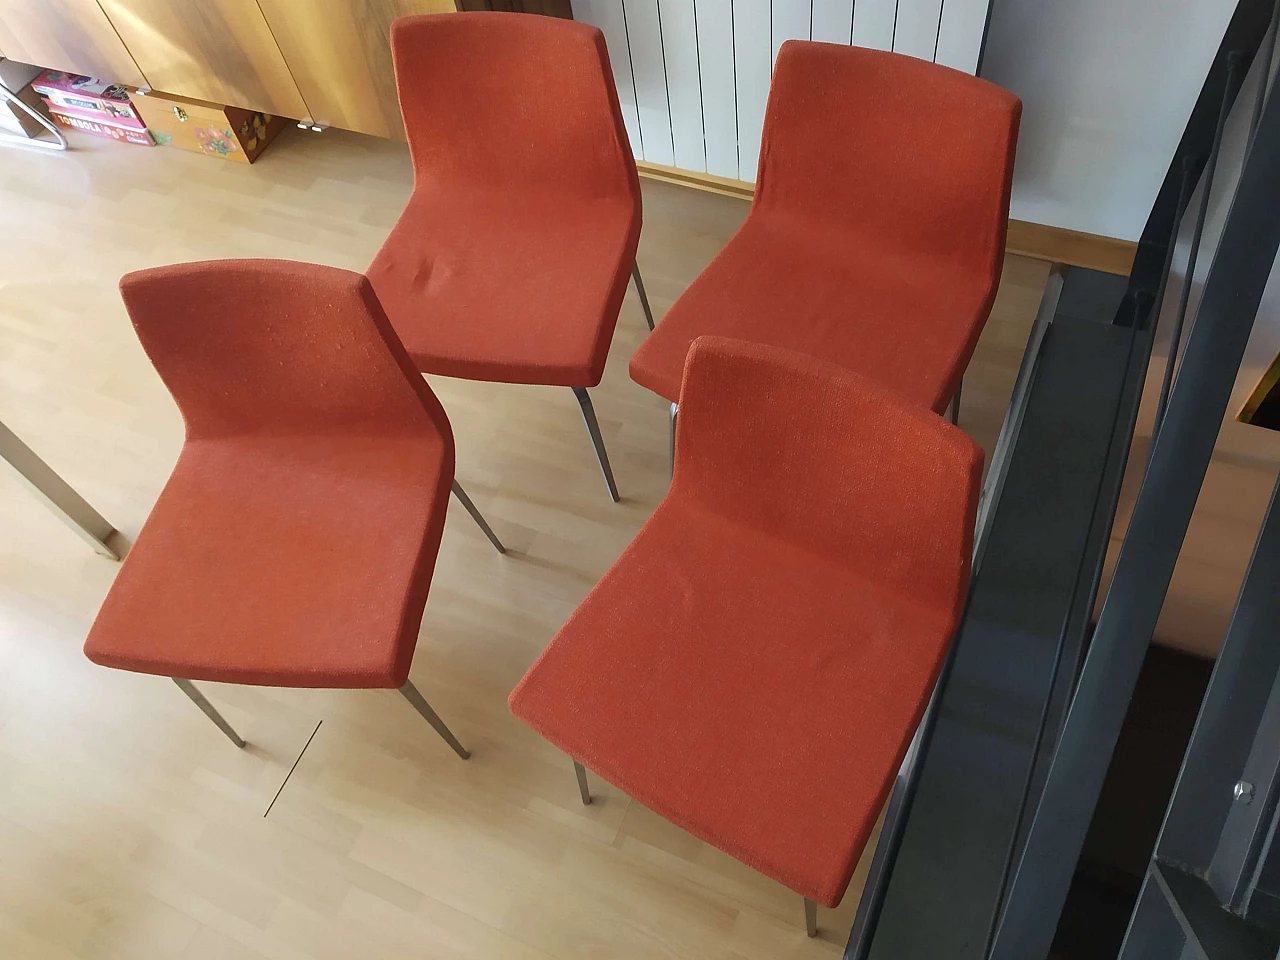 4 Hella Chairs by Mauro Lipparini for MisuraEmme 1477199